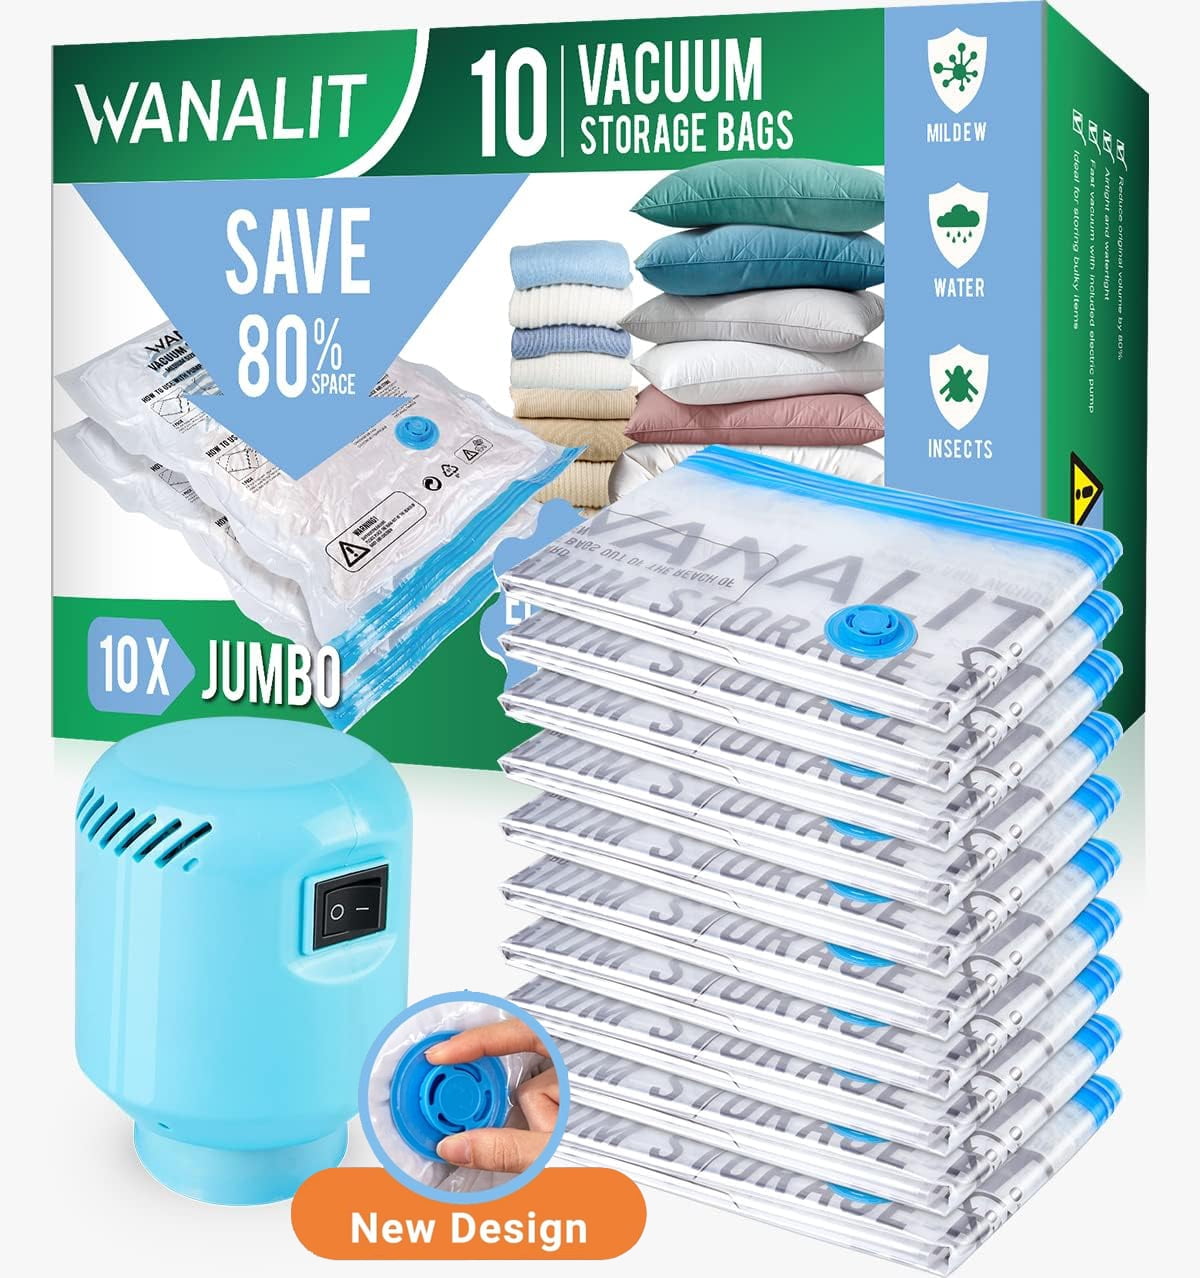 Nataka Vacuum Storage Bags - Vacuum Sealer Bags for Clothes - Vacuum Seal Bags for Clothing - Space Bags Vacuum Storage Bags Jumbo for Comforters